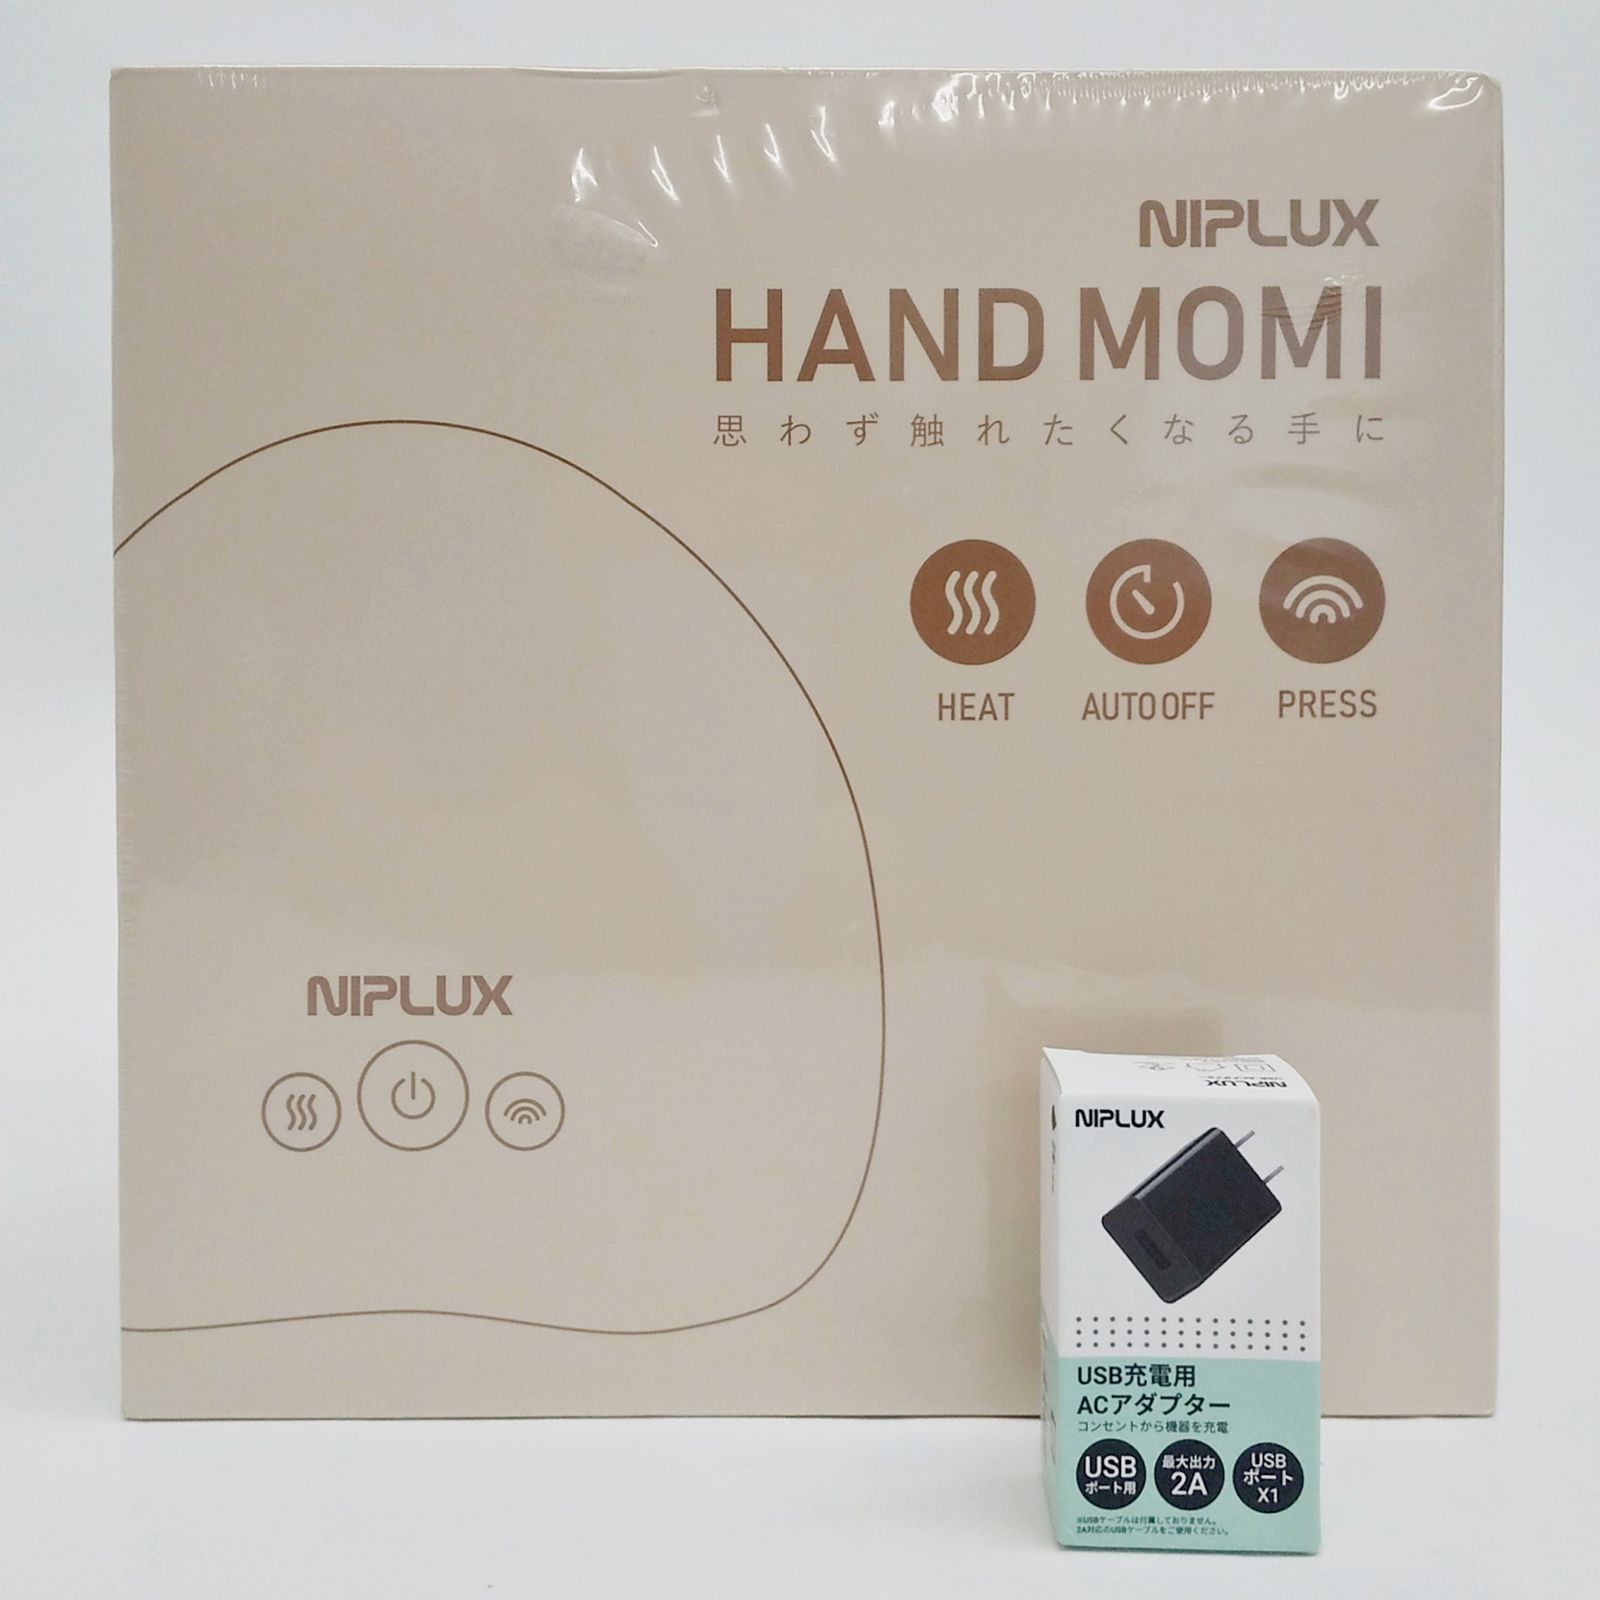 NIPLUX HAND MOMI ハンドモミ - 美容/健康